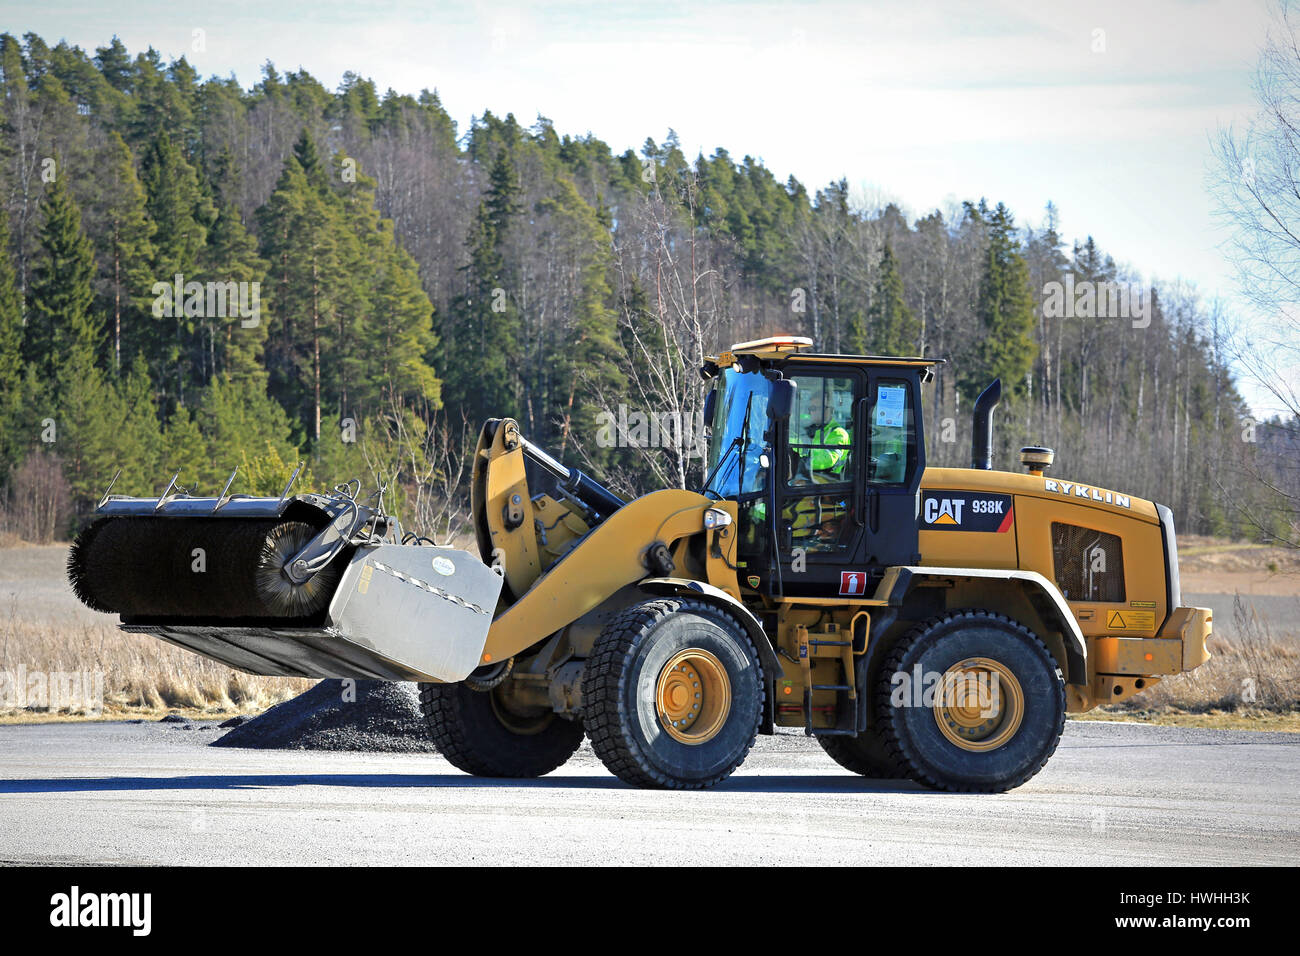 PAIMIO, Finlandia - 18 Marzo 2017: CAT 938 K ruota il caricatore e la benna spazzatrice al lavoro per pulire un asfalto cortile a molla. Foto Stock